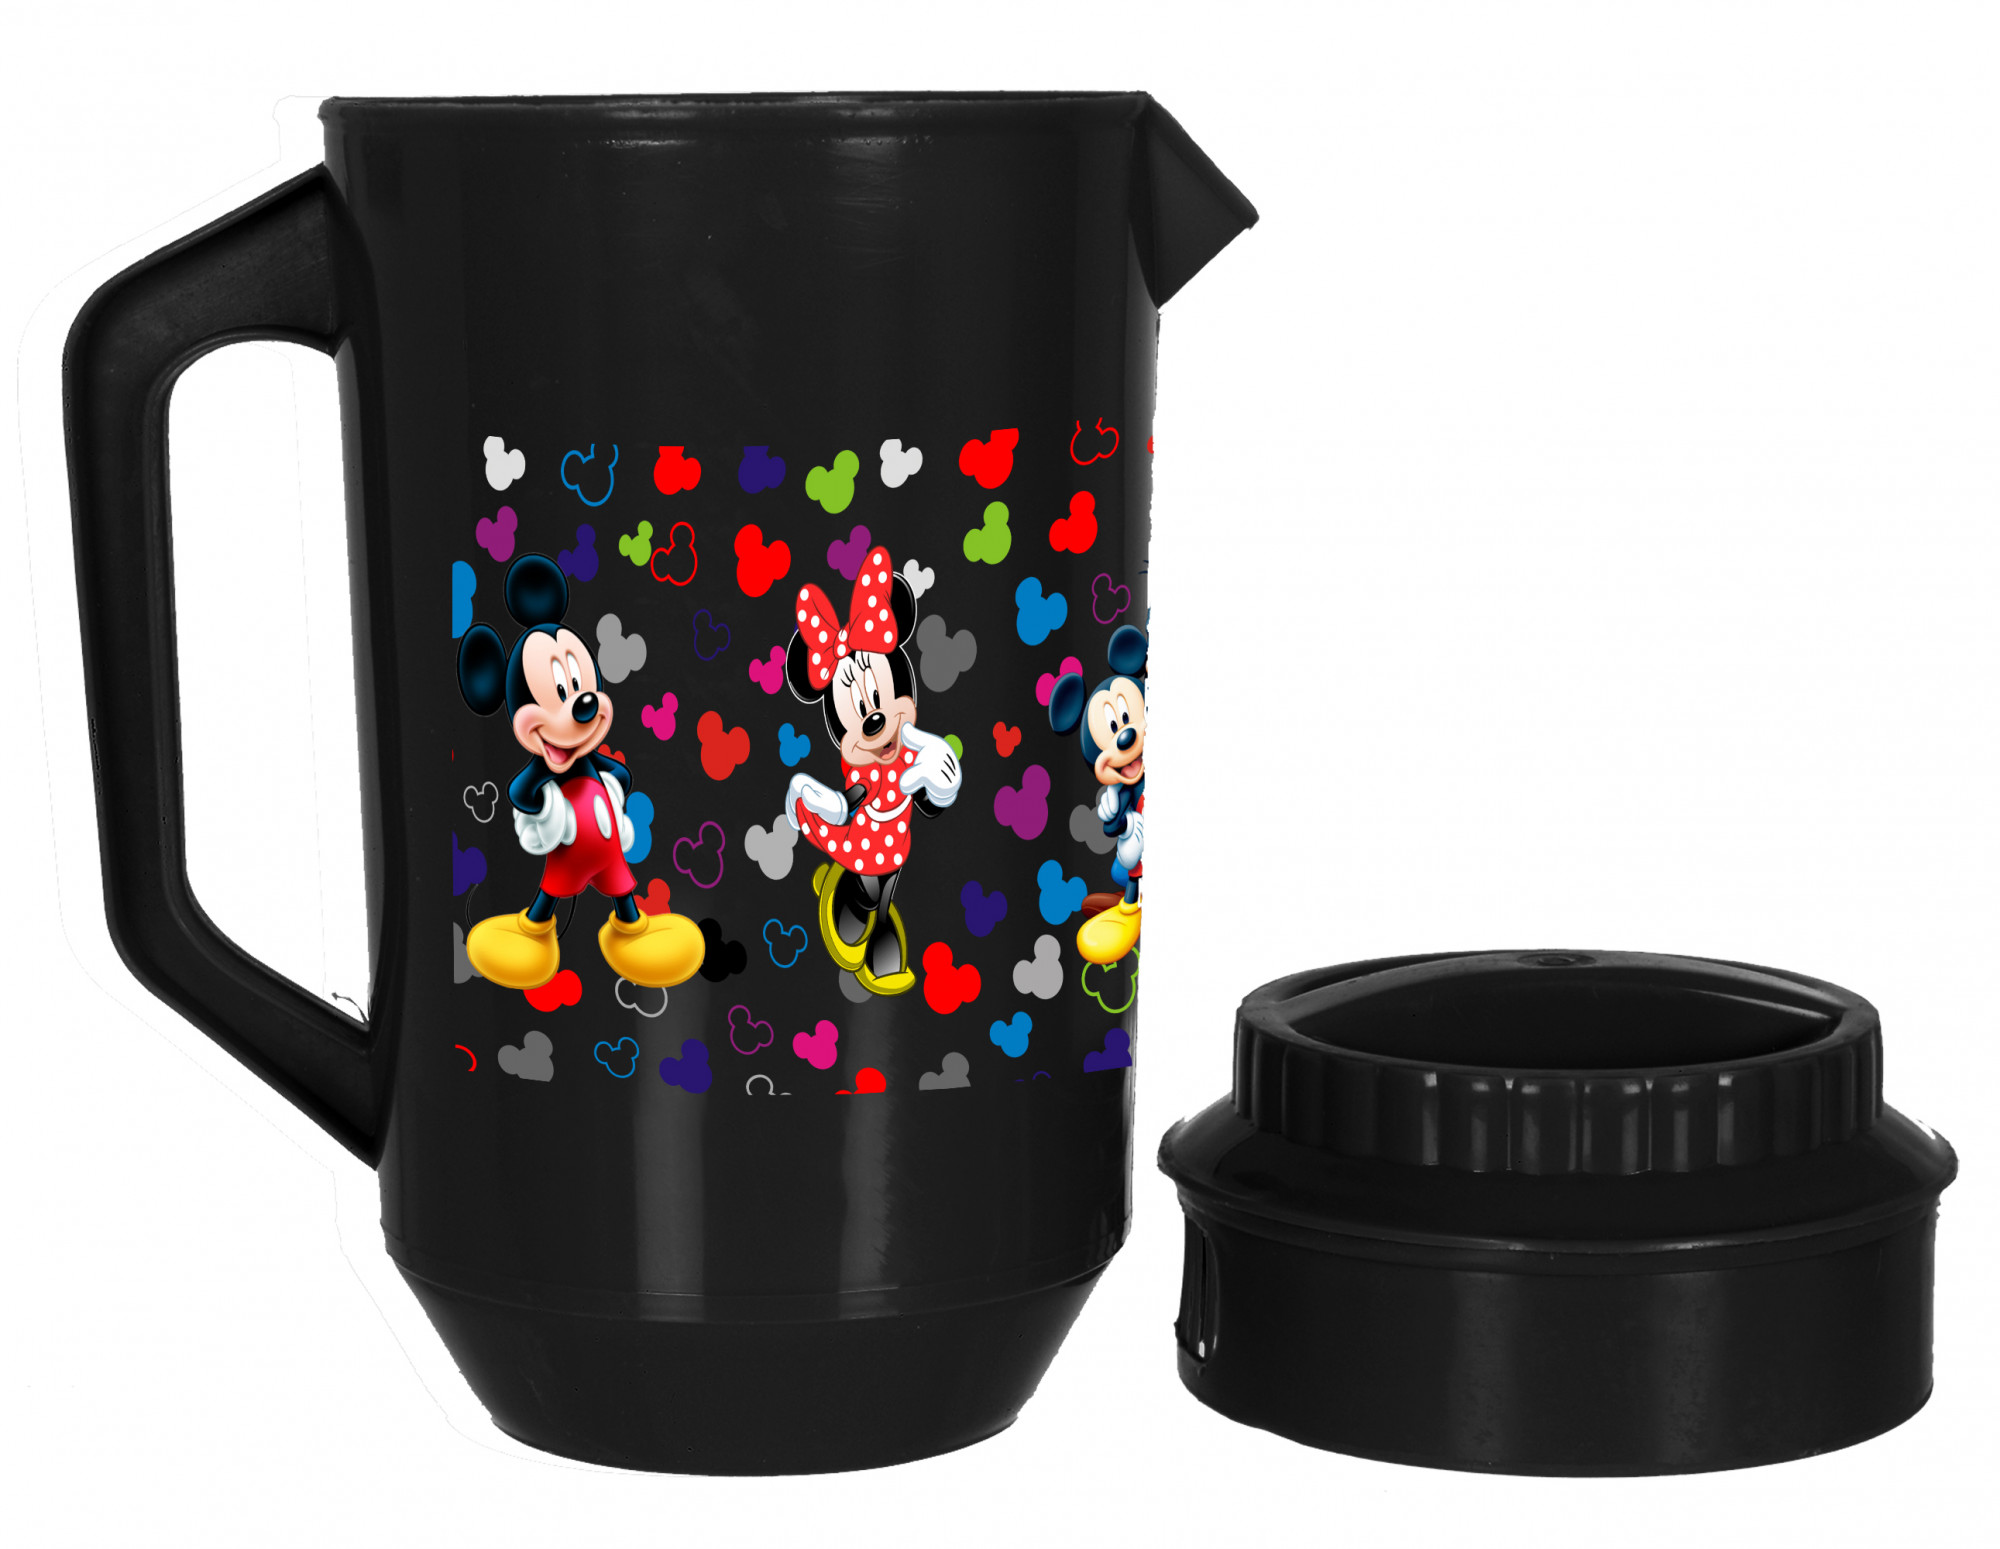 Kuber Industries Disney Team Mickey Print Unbreakable Multipurpose Plastic Water & Juice Jug With Lid,2 Ltr (Set Of 2, Black & White)